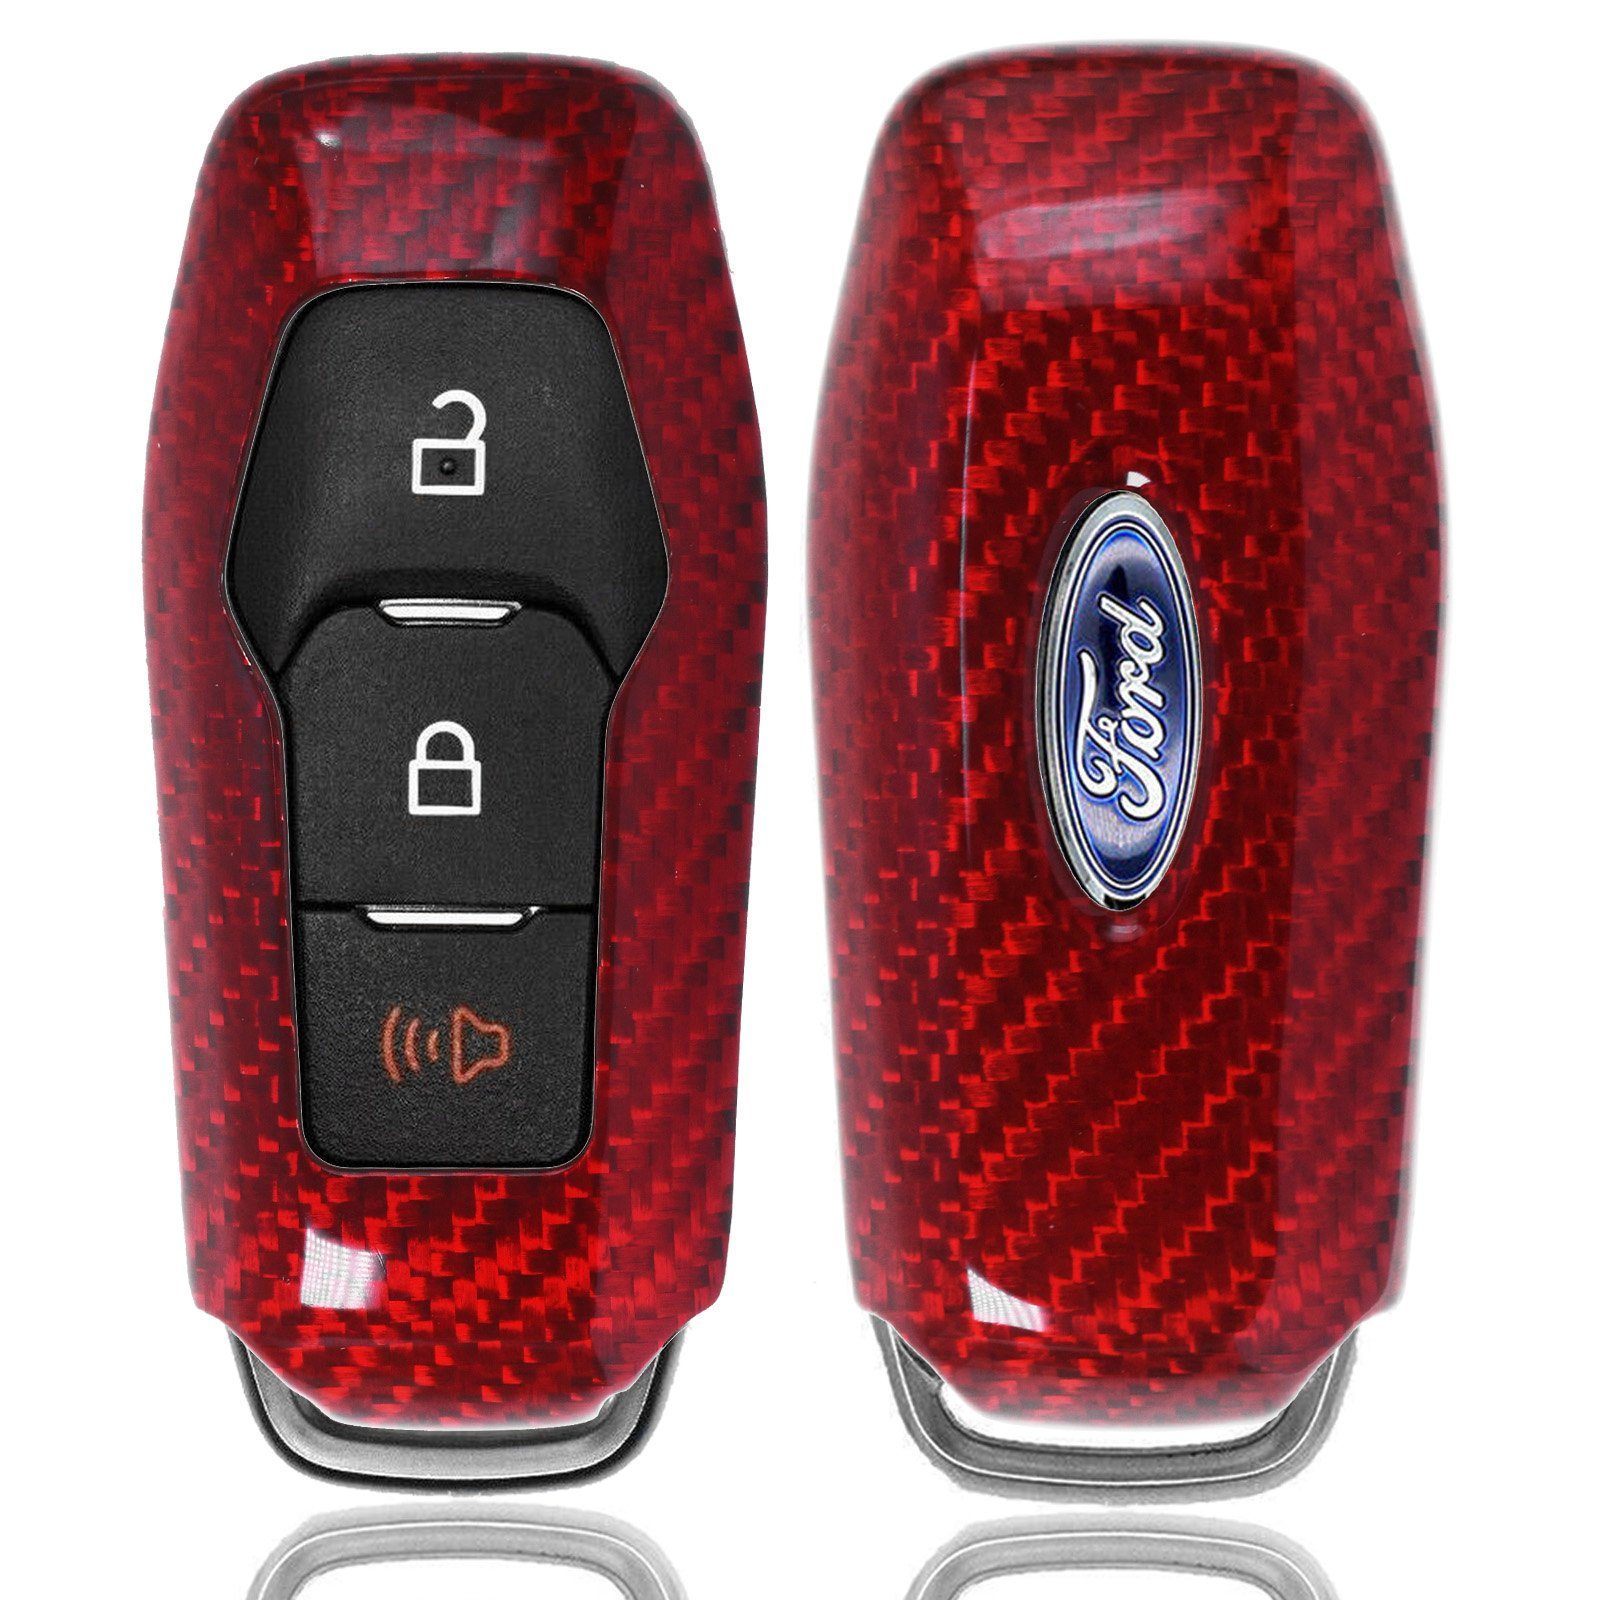 V KEYLESS Fiesta Schlüsseltasche Mondeo Schlüssel Auto KA+ Schutz Hülle C-Max Carbon-Optik Ford VII Grand für SMARTKEY T-Carbon Rot,